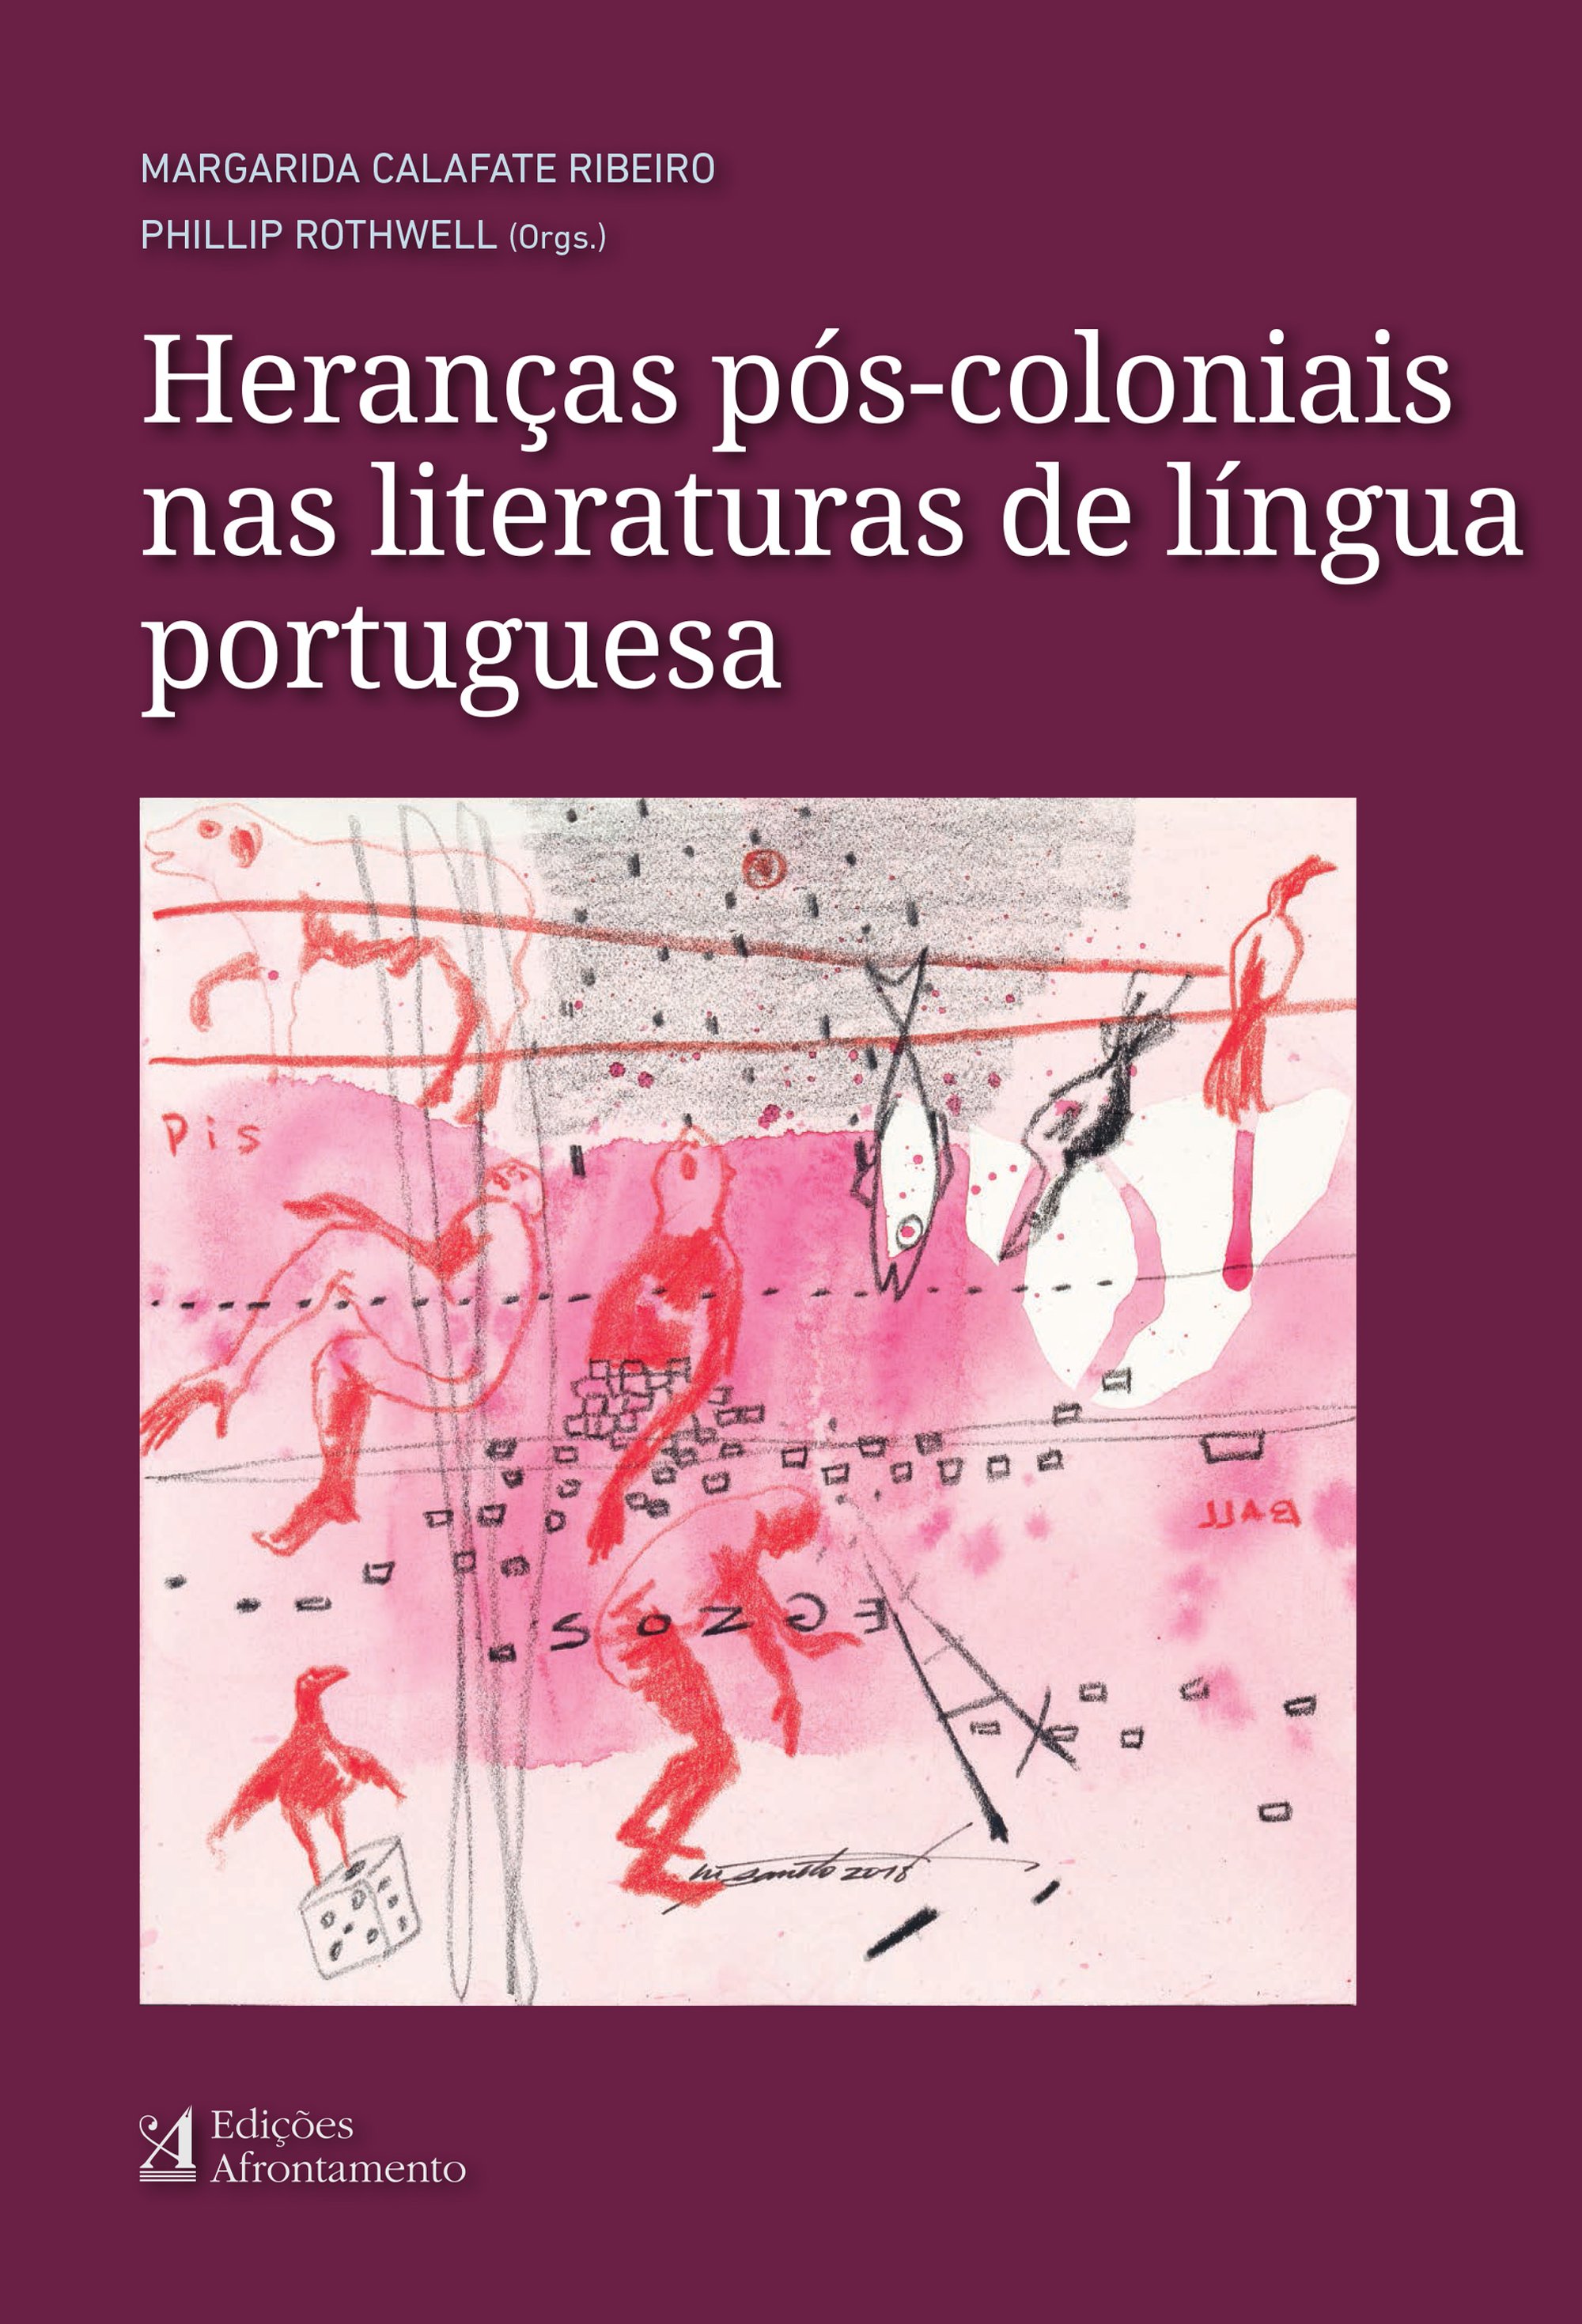 Heranças Pós-Coloniais nas Literaturas de Língua Portuguesa (2019), Margarida Calafate Ribeiro e Phillip Rothwell